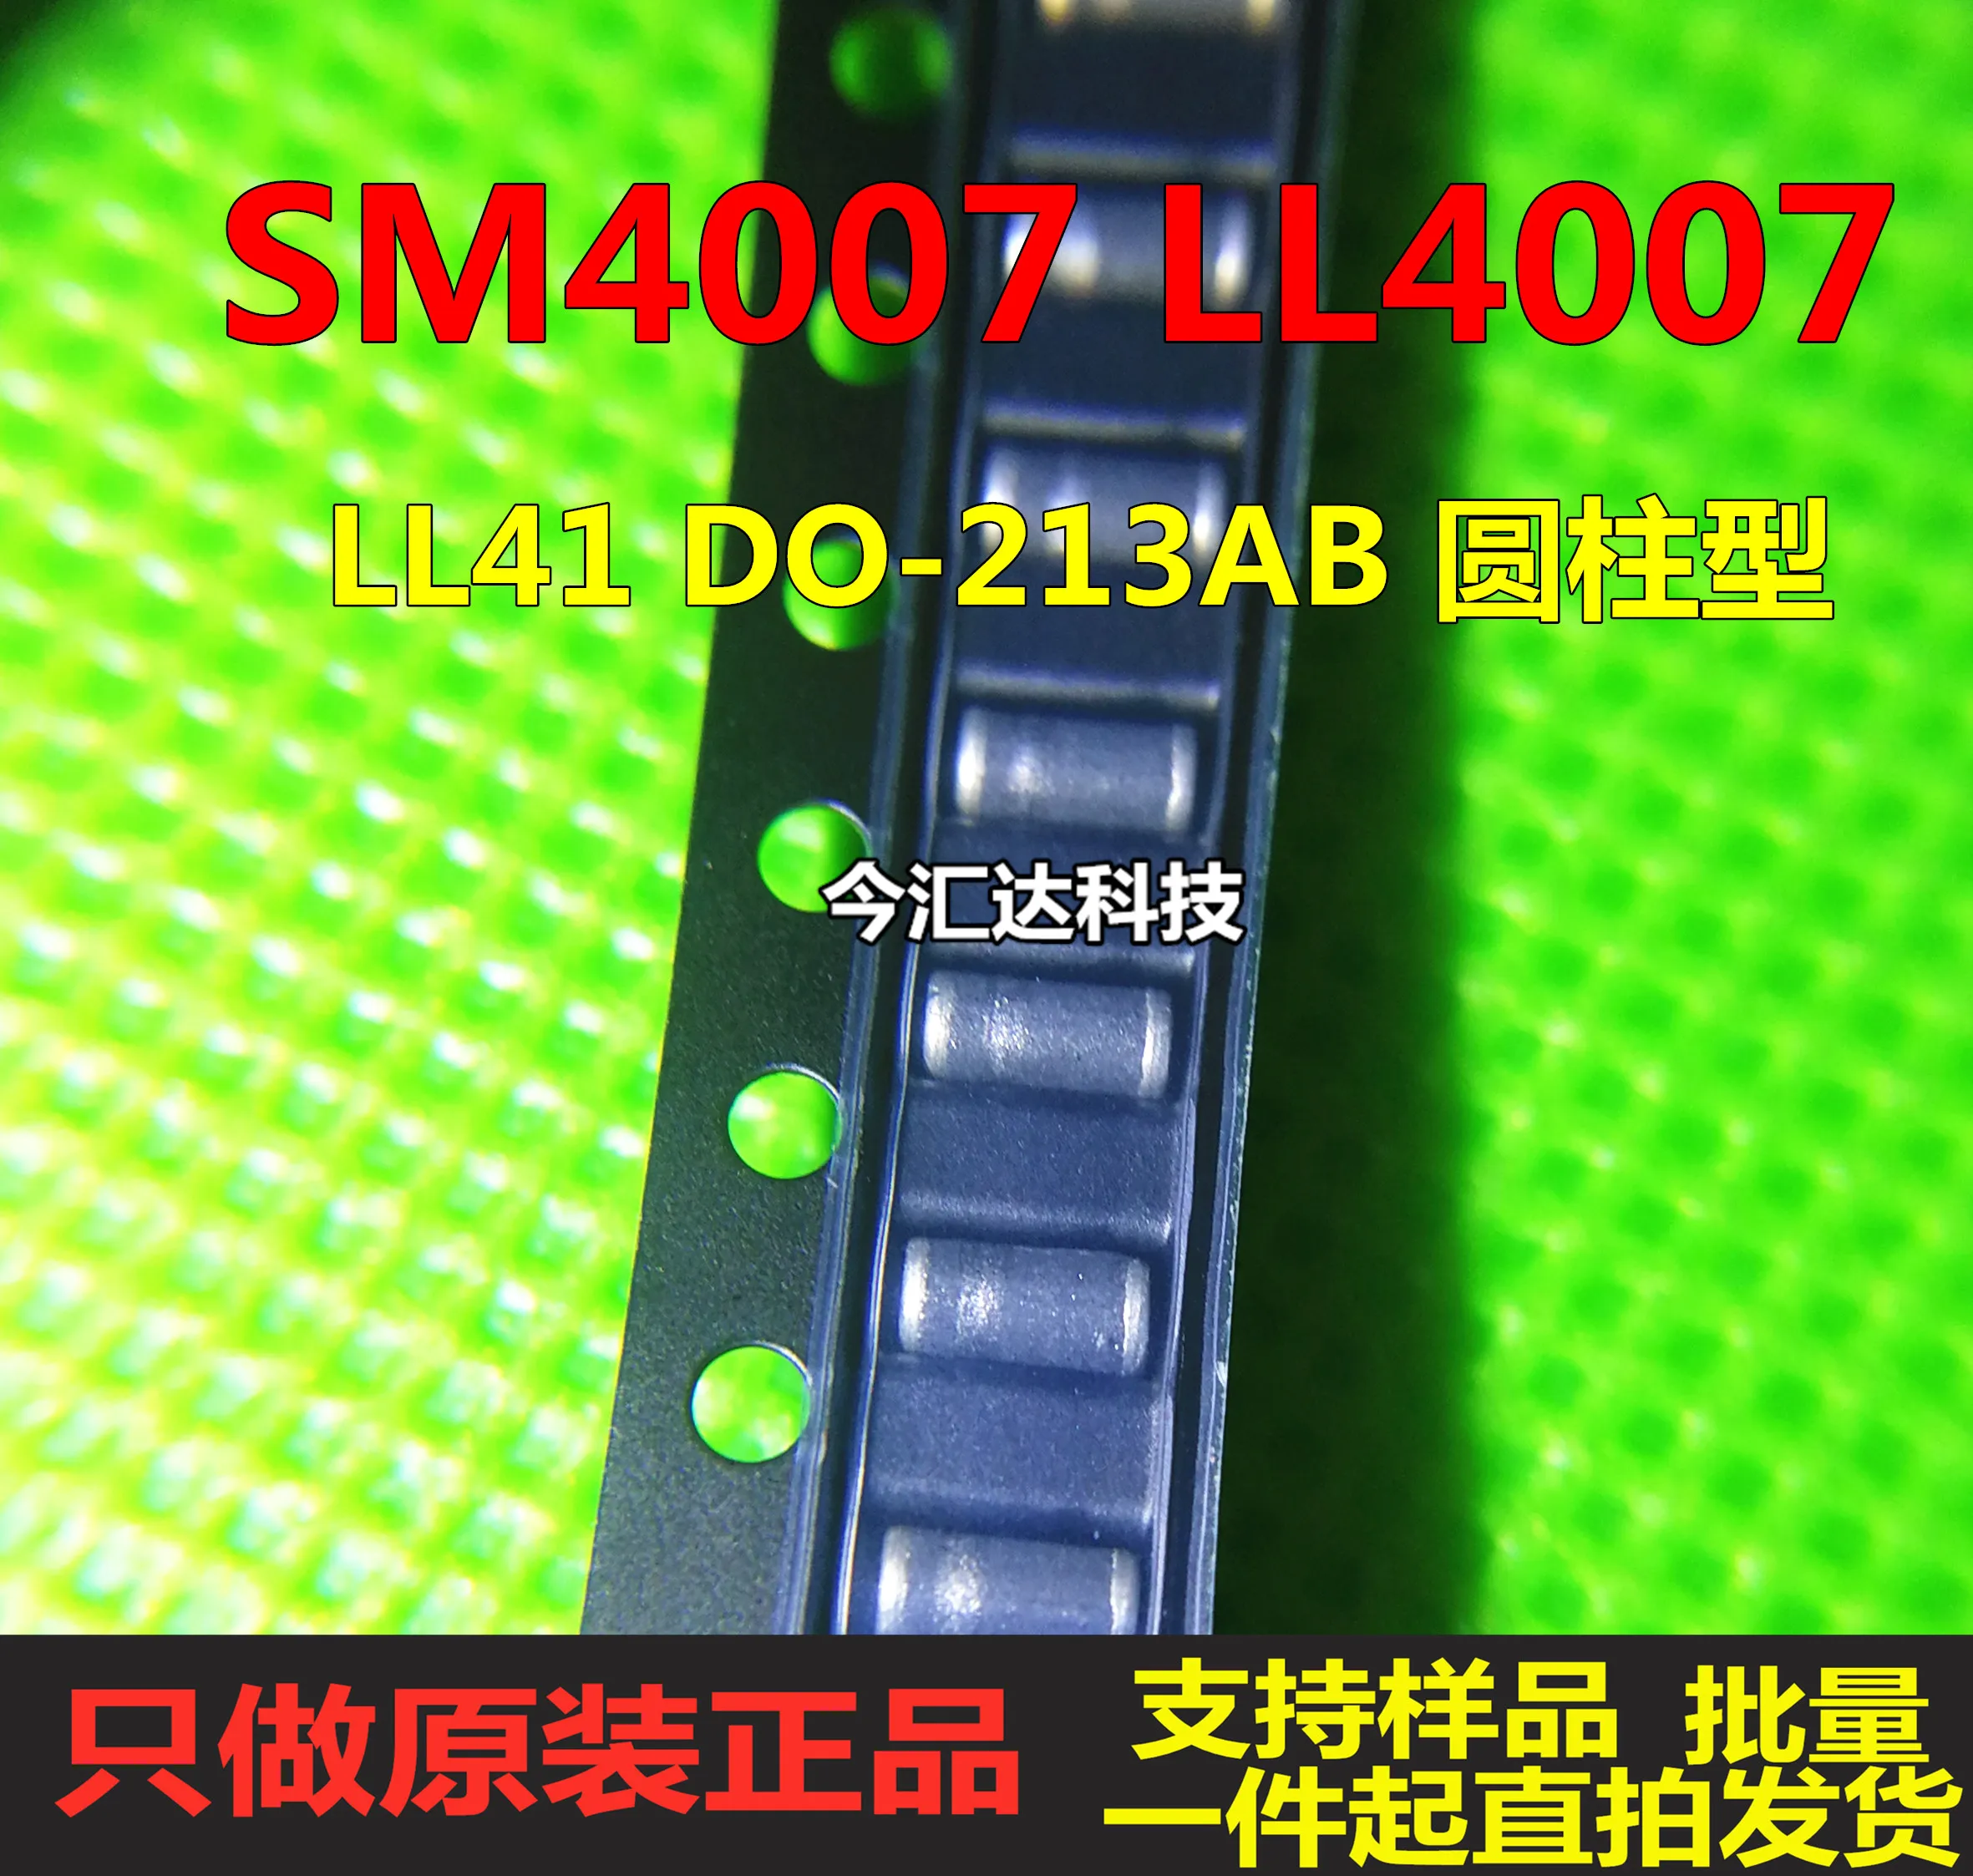 

50 шт. Оригинальный Новый 50 шт. Оригинальный Новый SM4007 LL4007 выпрямительный диод LL41 DO-213AB цилиндрического типа